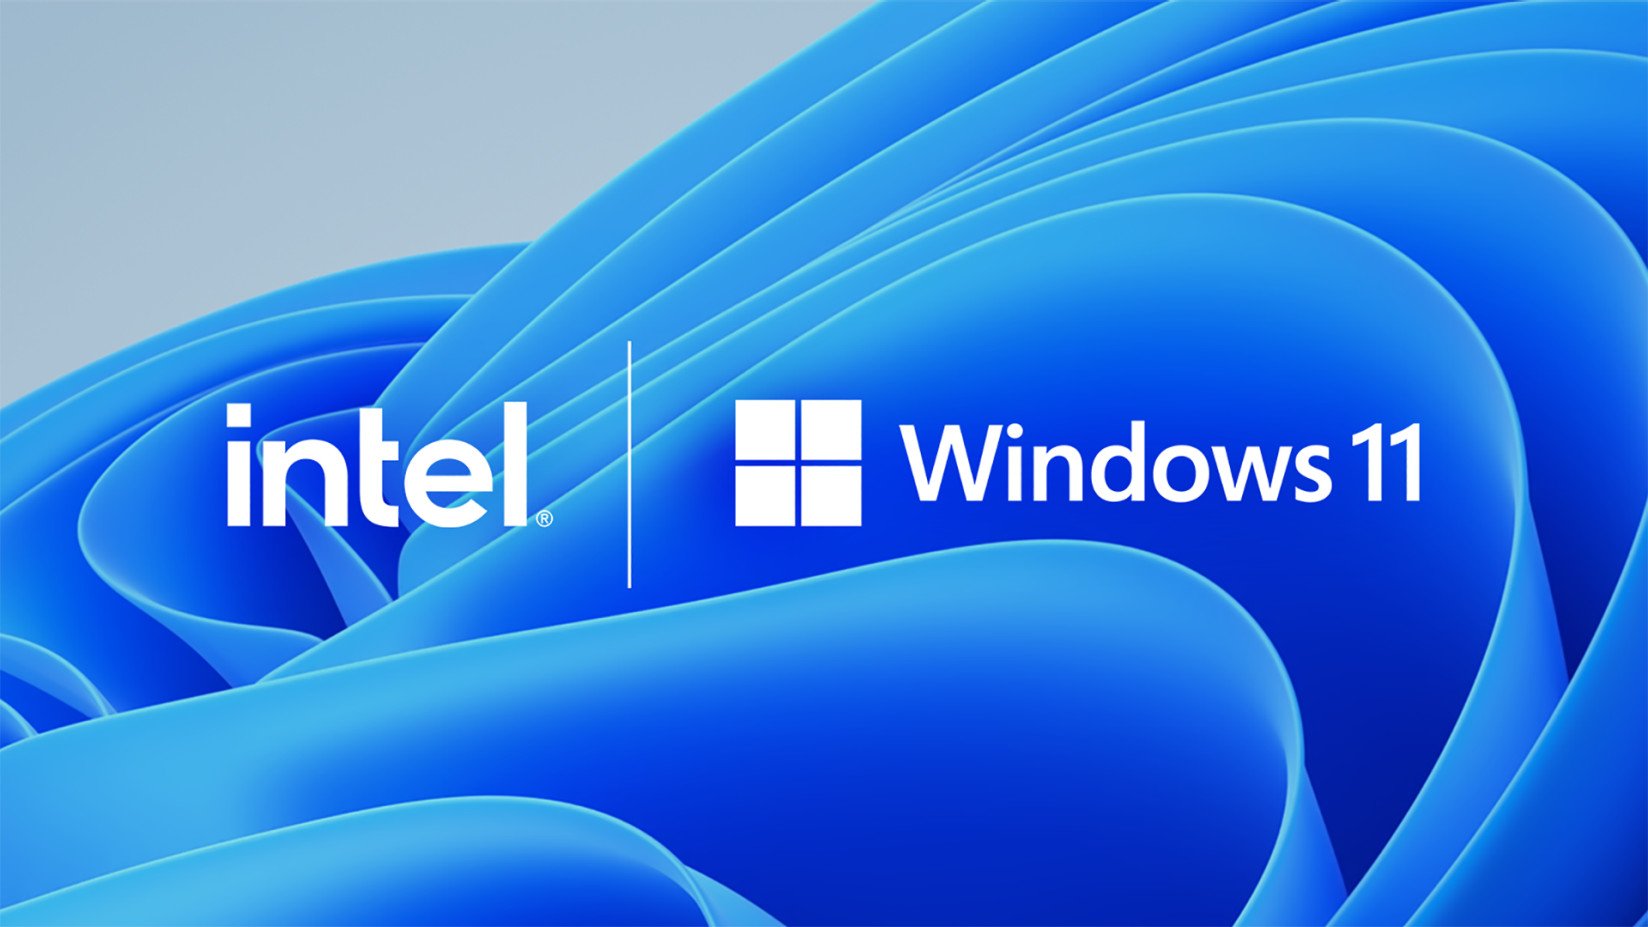 Logo da Intel, dona dos processadores Alder Lake, ao lado do logo do Windows 11